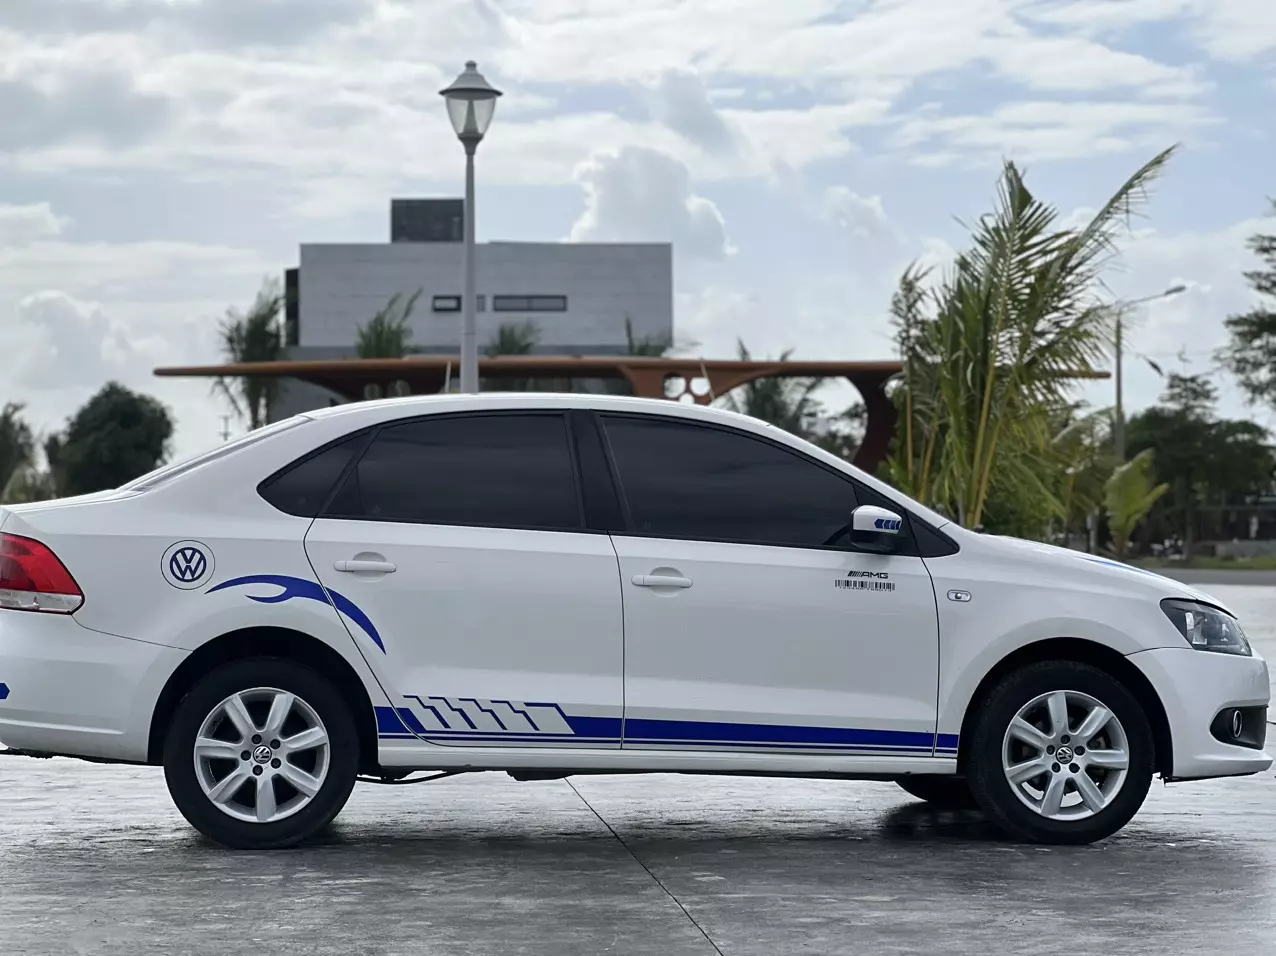 Volkswagen Polo 2015 - Em xin chào bán 1 dòng xe nhập khẩu nguyên chiếc thương hiệu Đức!